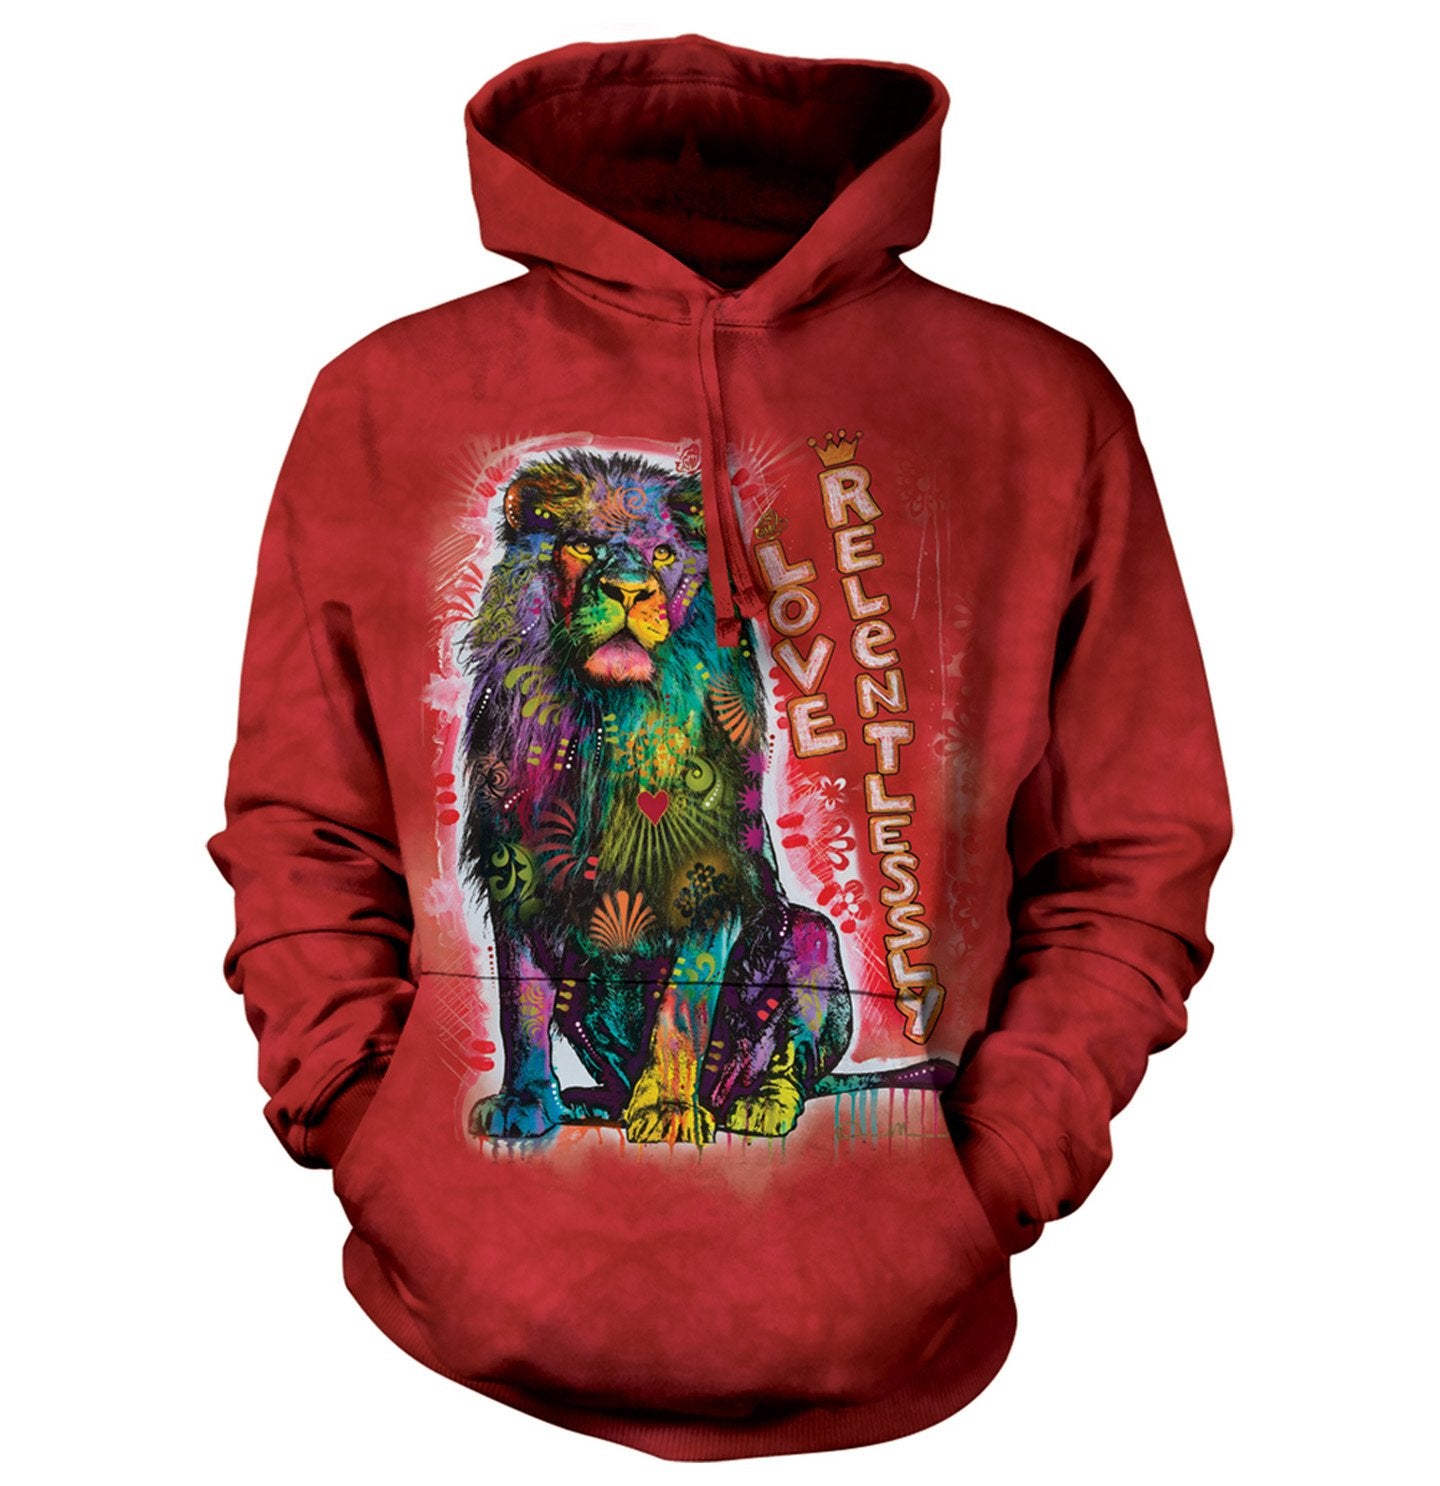 Animal Pride - Love Relentlessly - Adult Unisex Hoodie Sweatshirt